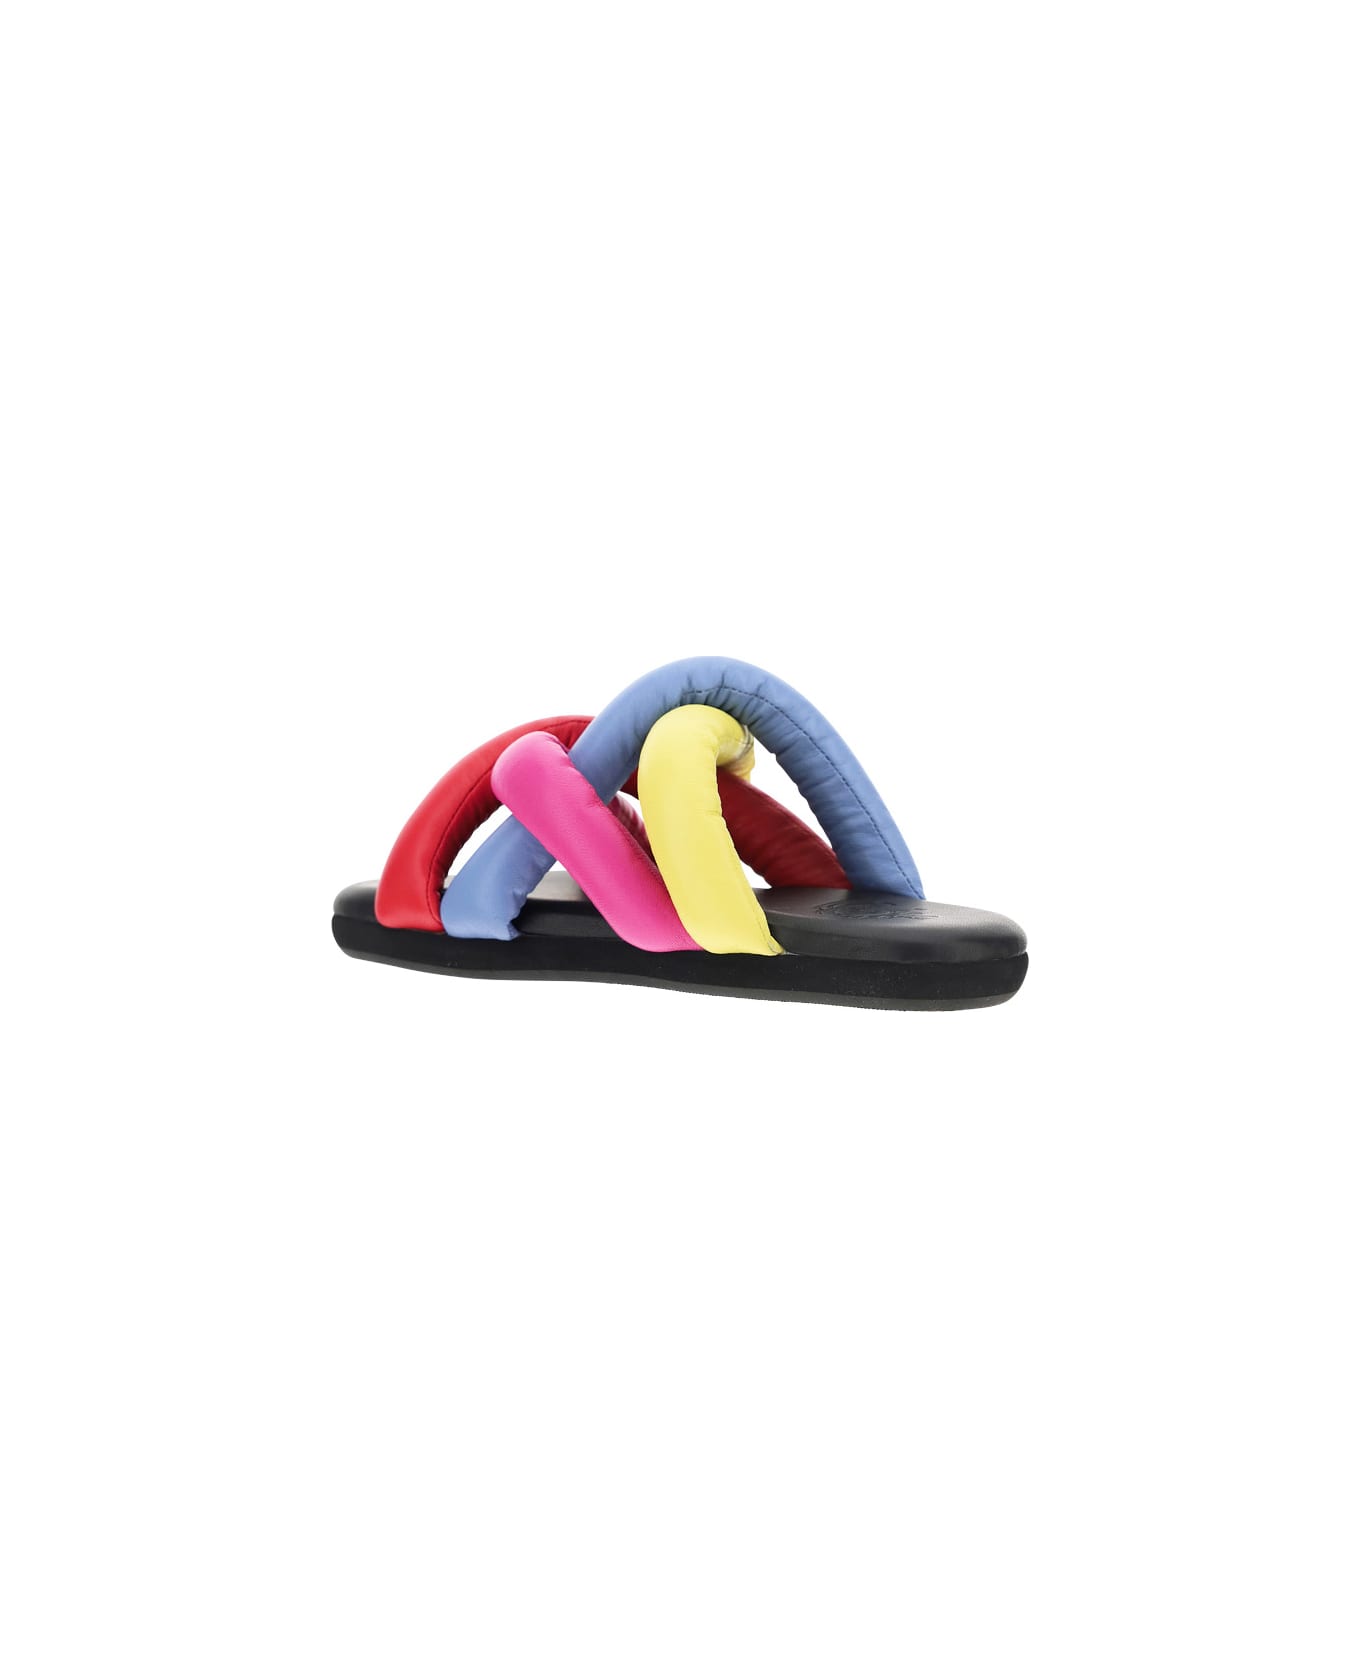 Moncler Jbaided Sandals - Multi-colour